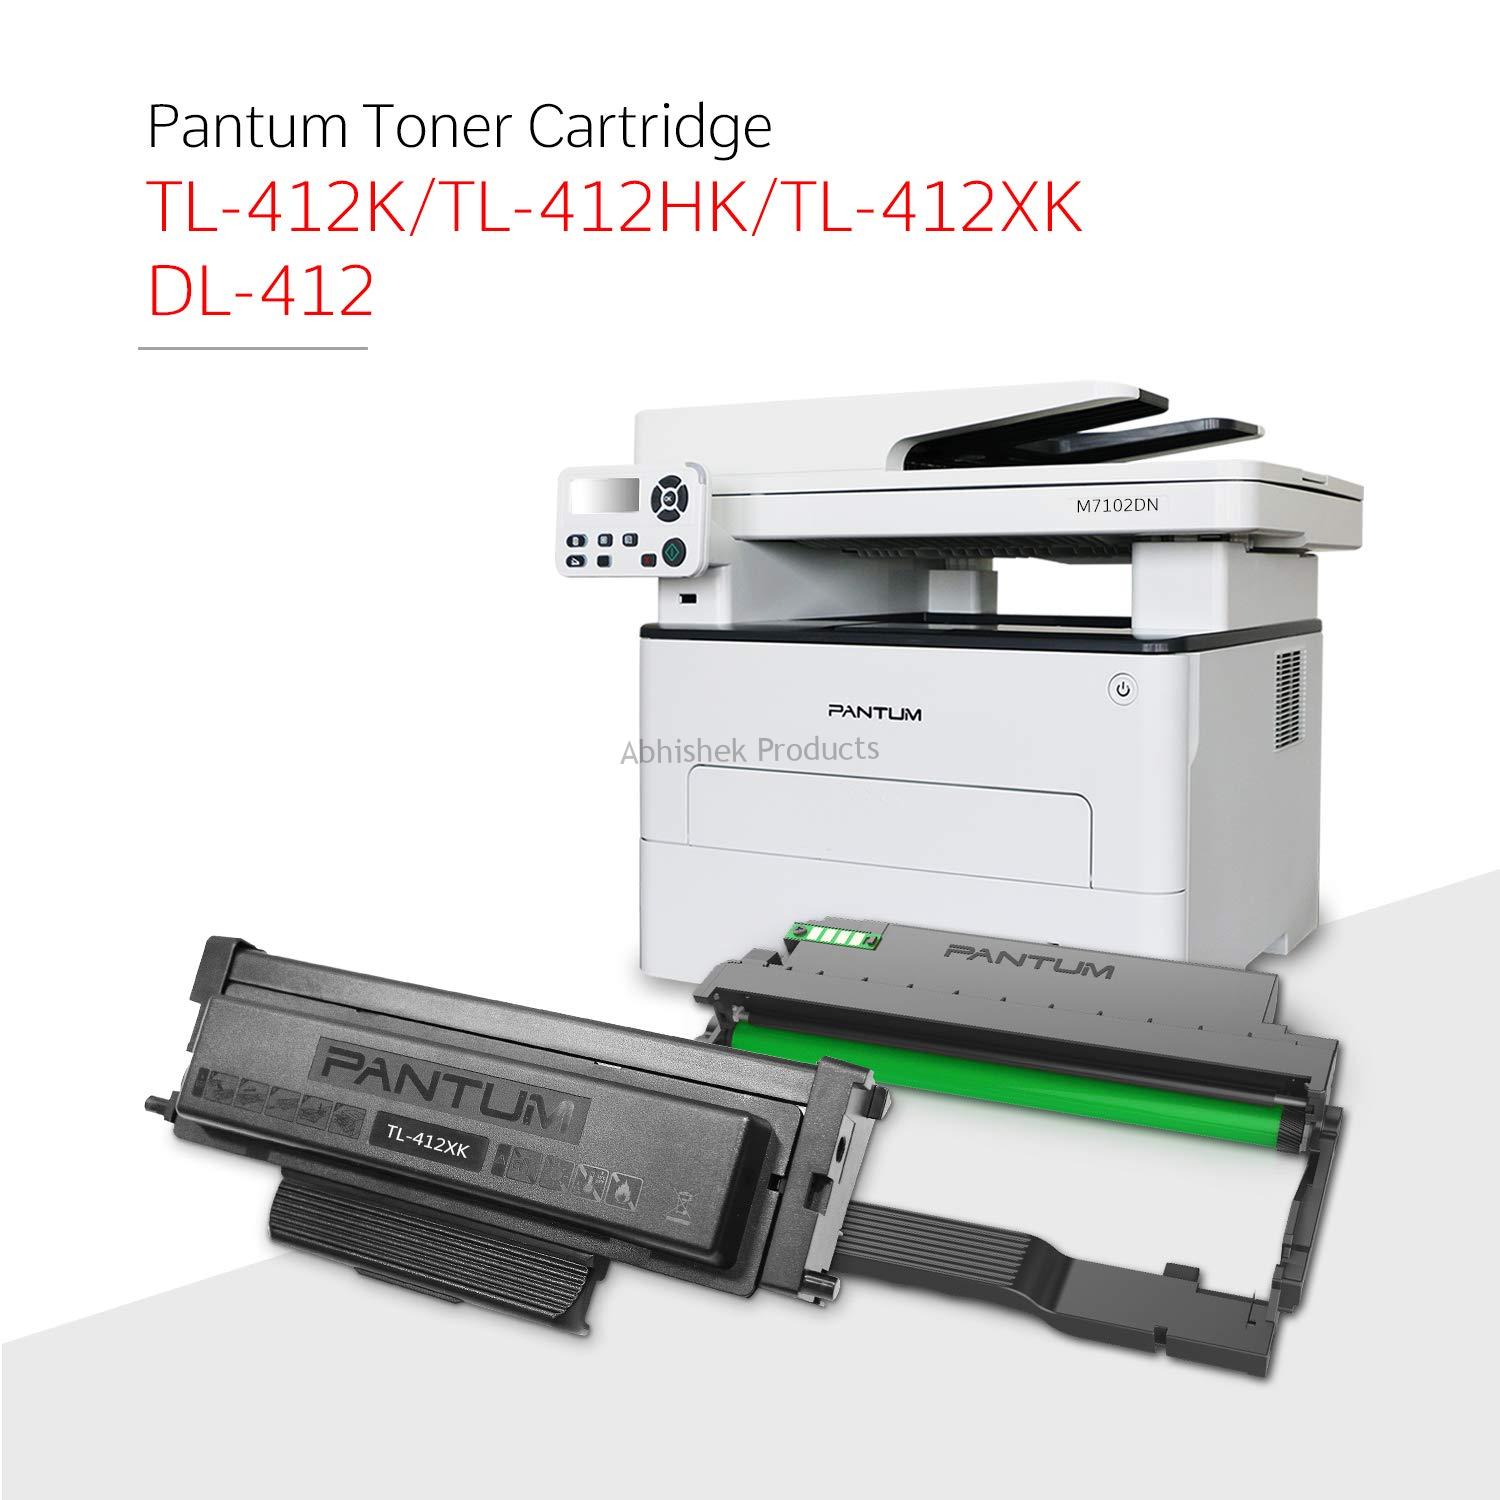 Imprimante laser multifonction Pantum M7102DN avec Cote dIvoire